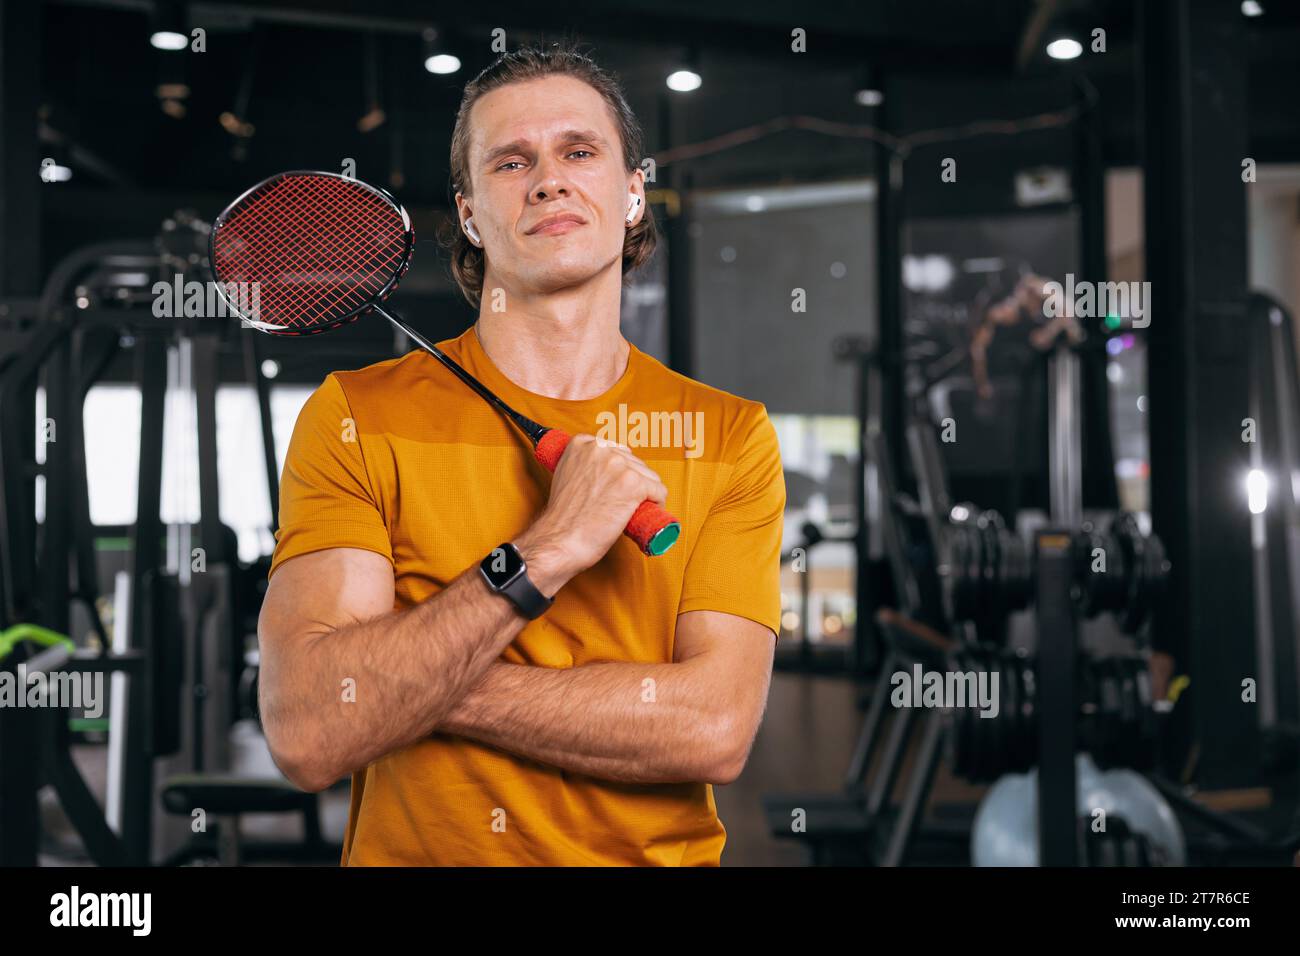 Badmintonspieler Athlet Mann mit Schläger im Sportstudio Fitness Muskel Training Hintergrund Stockfoto